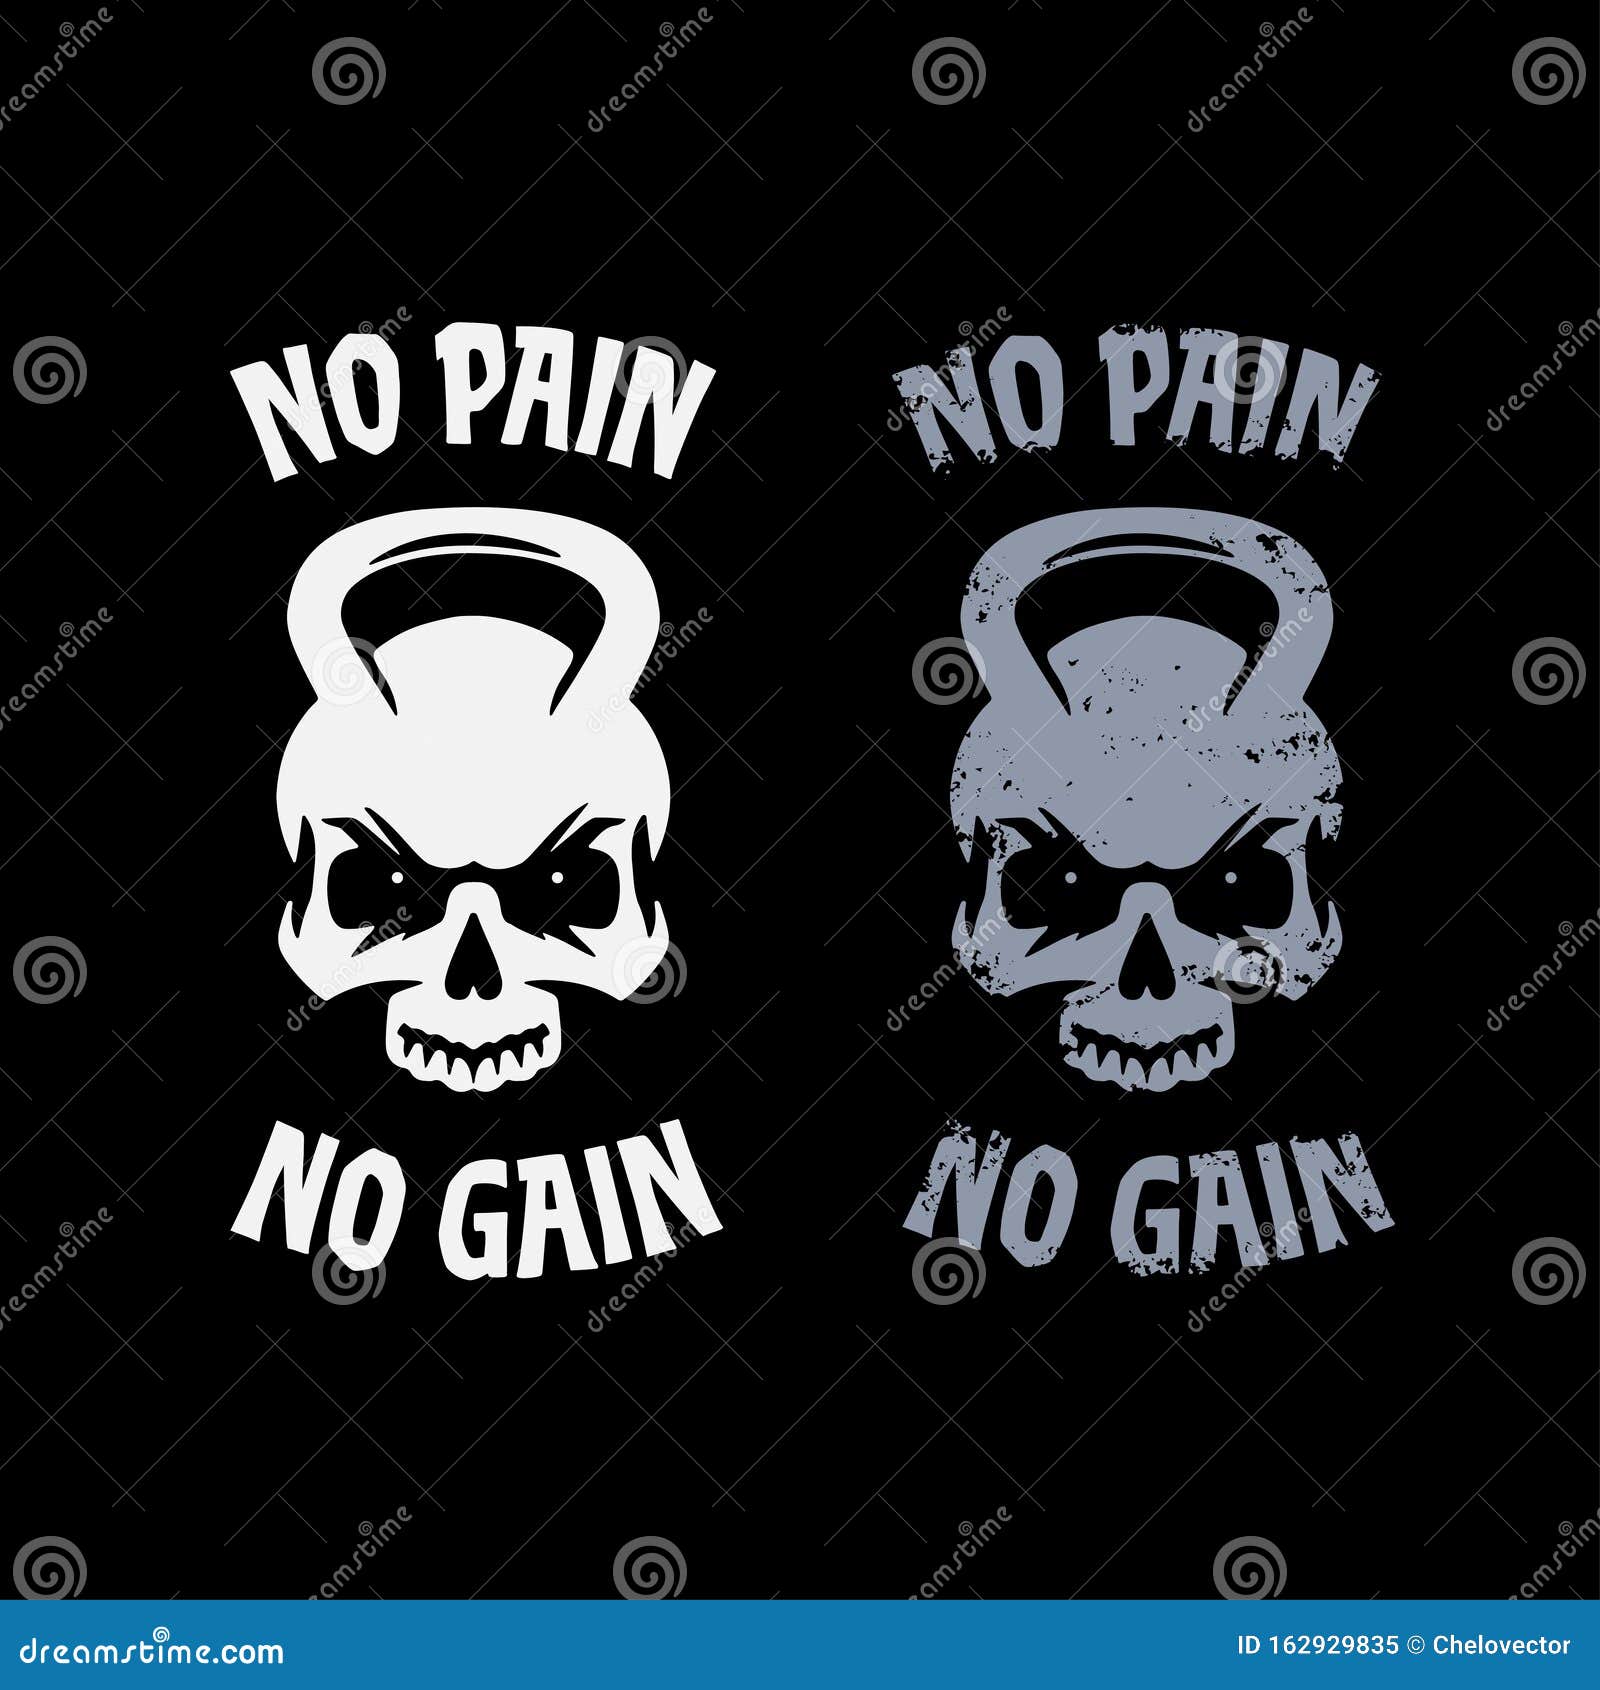 no pain no gain poster.  .